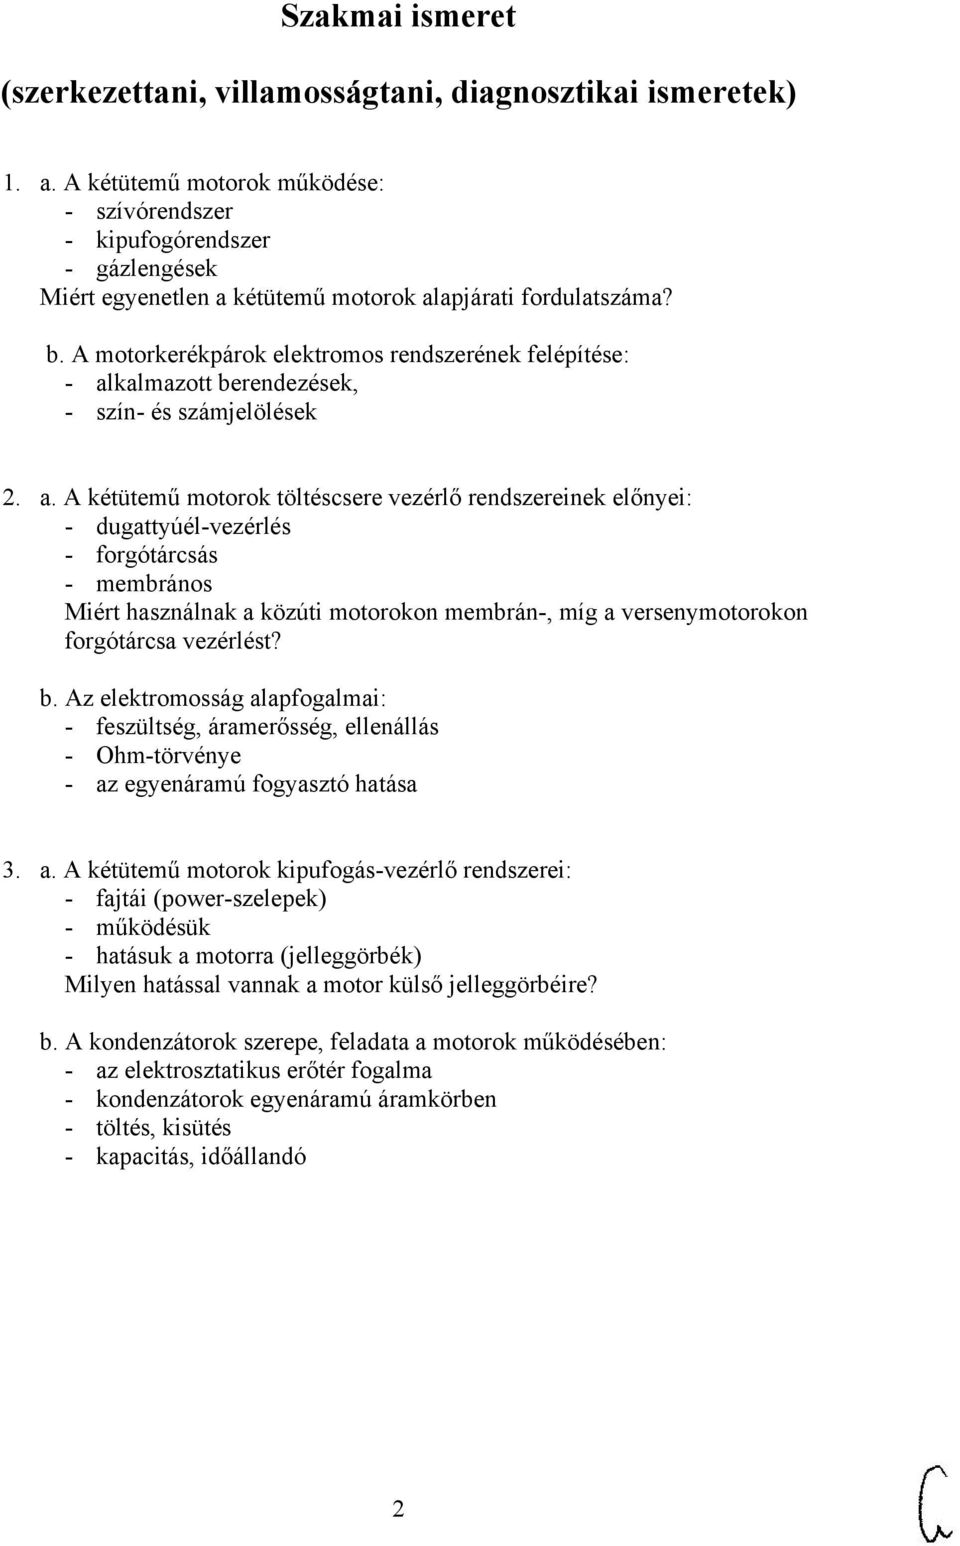 Szakmai ismeret. (szerkezettani, villamosságtani, diagnosztikai ismeretek)  - PDF Ingyenes letöltés